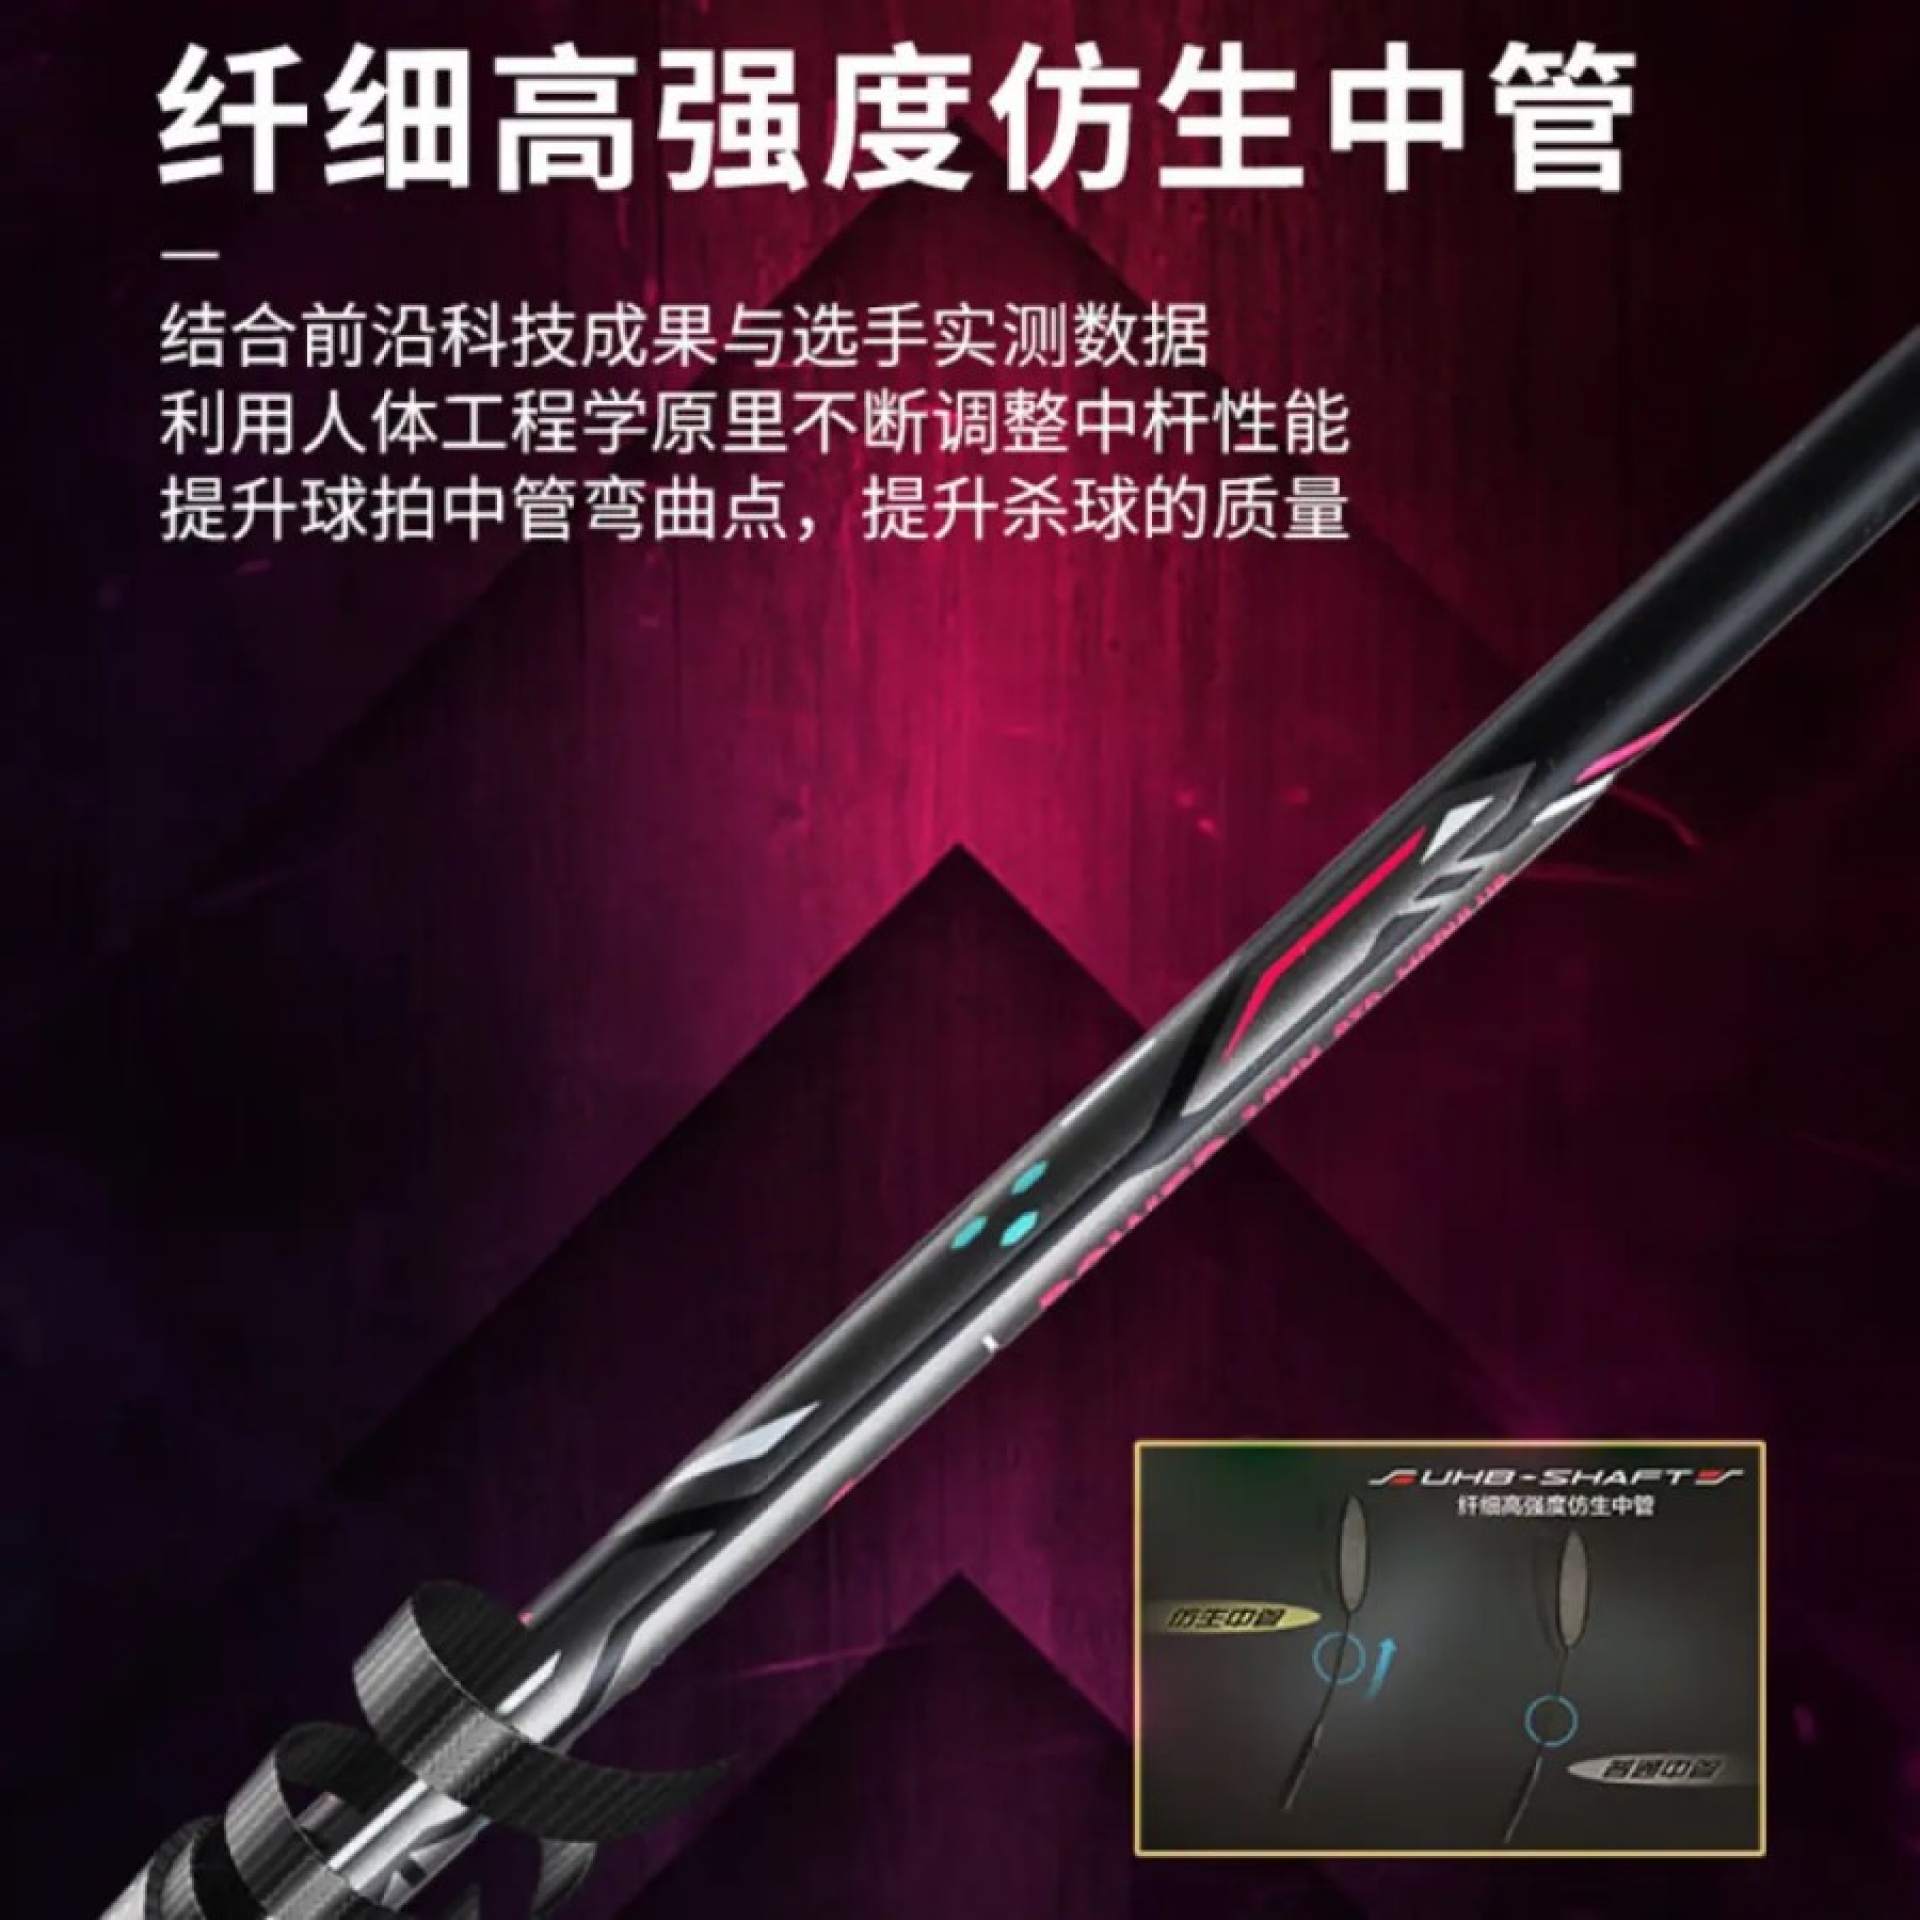 New Raket Badminton Lining Axforce / AX Force Cannon AYTP307 Black ...